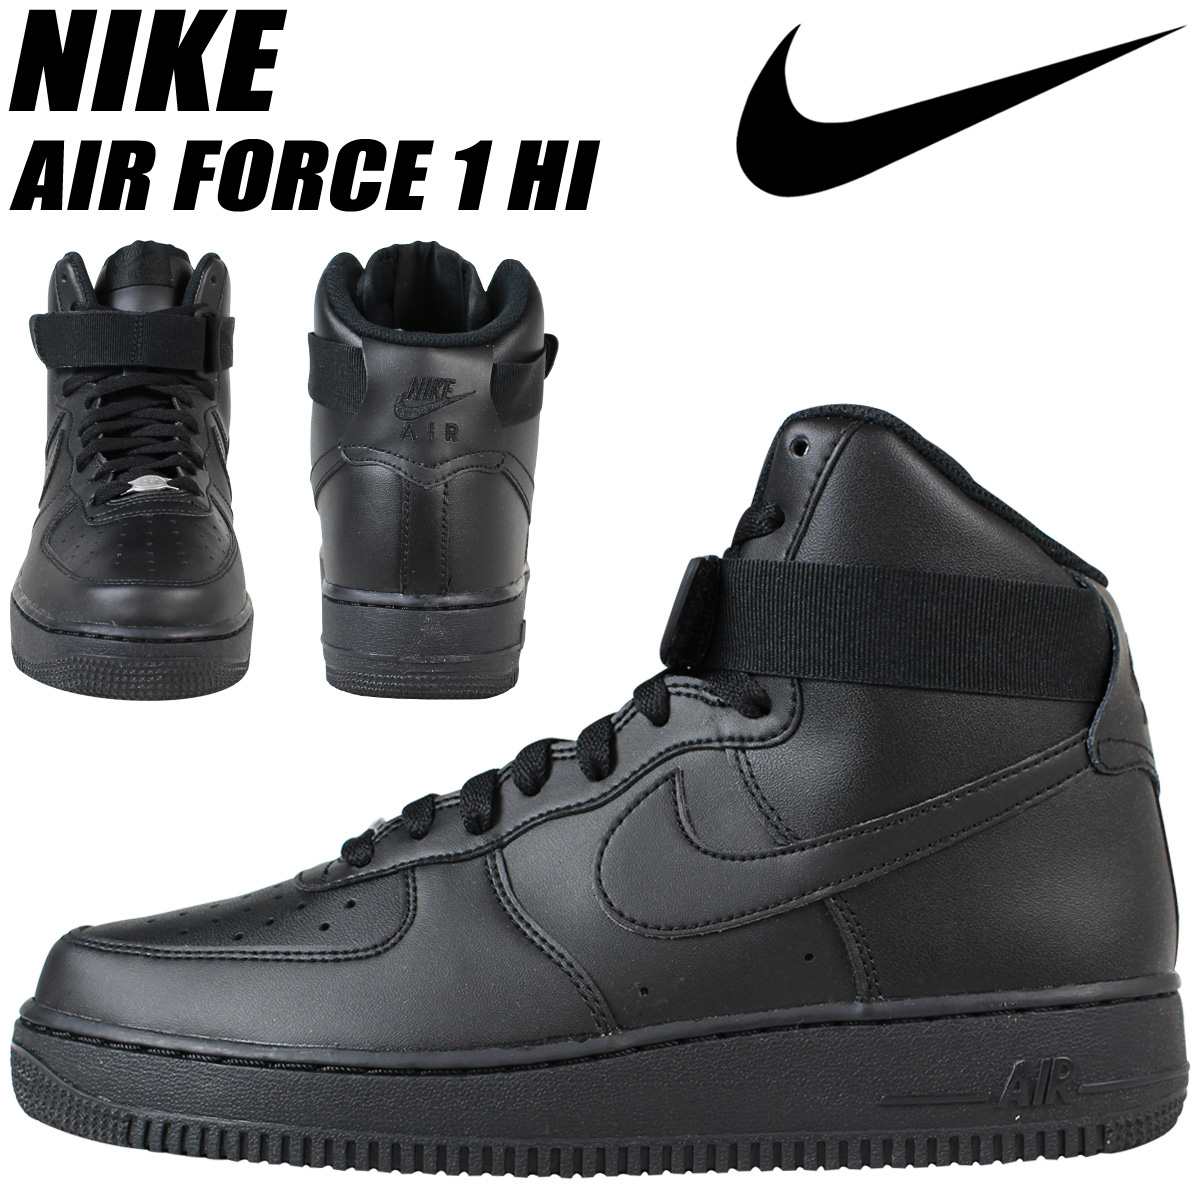 nike air force 1 high black